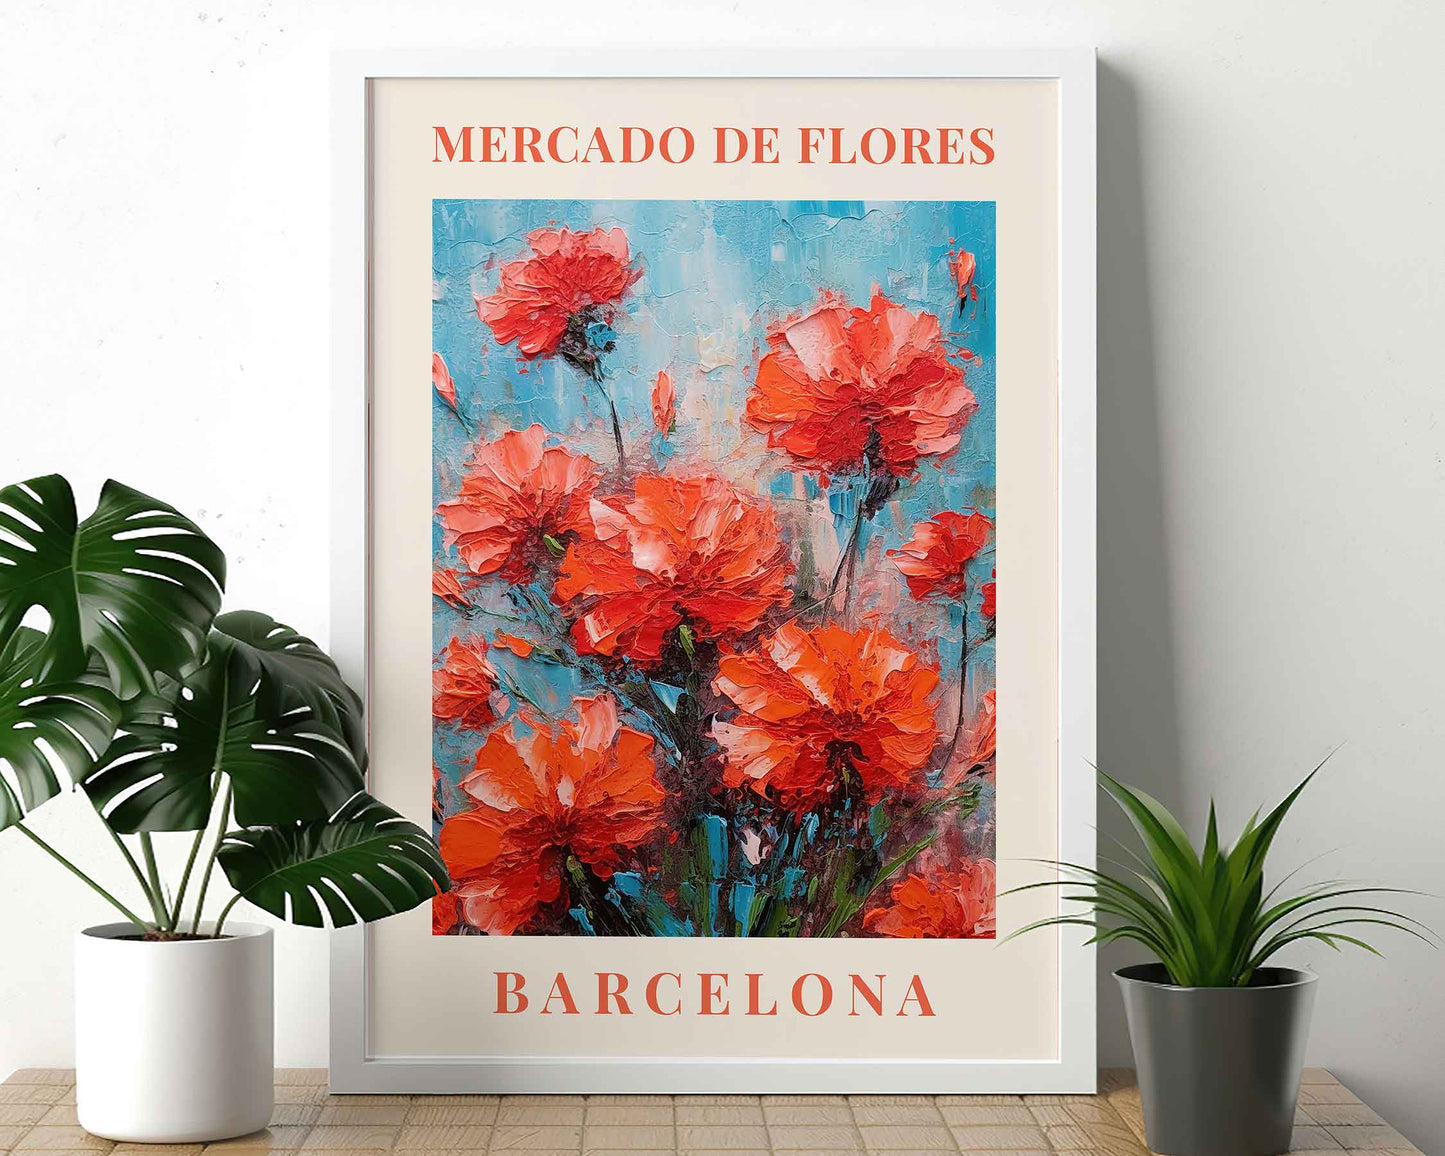 Framed Image of Barcelona Flower Market Prints Vintage Boho Botanical Painting Wall Art Posters